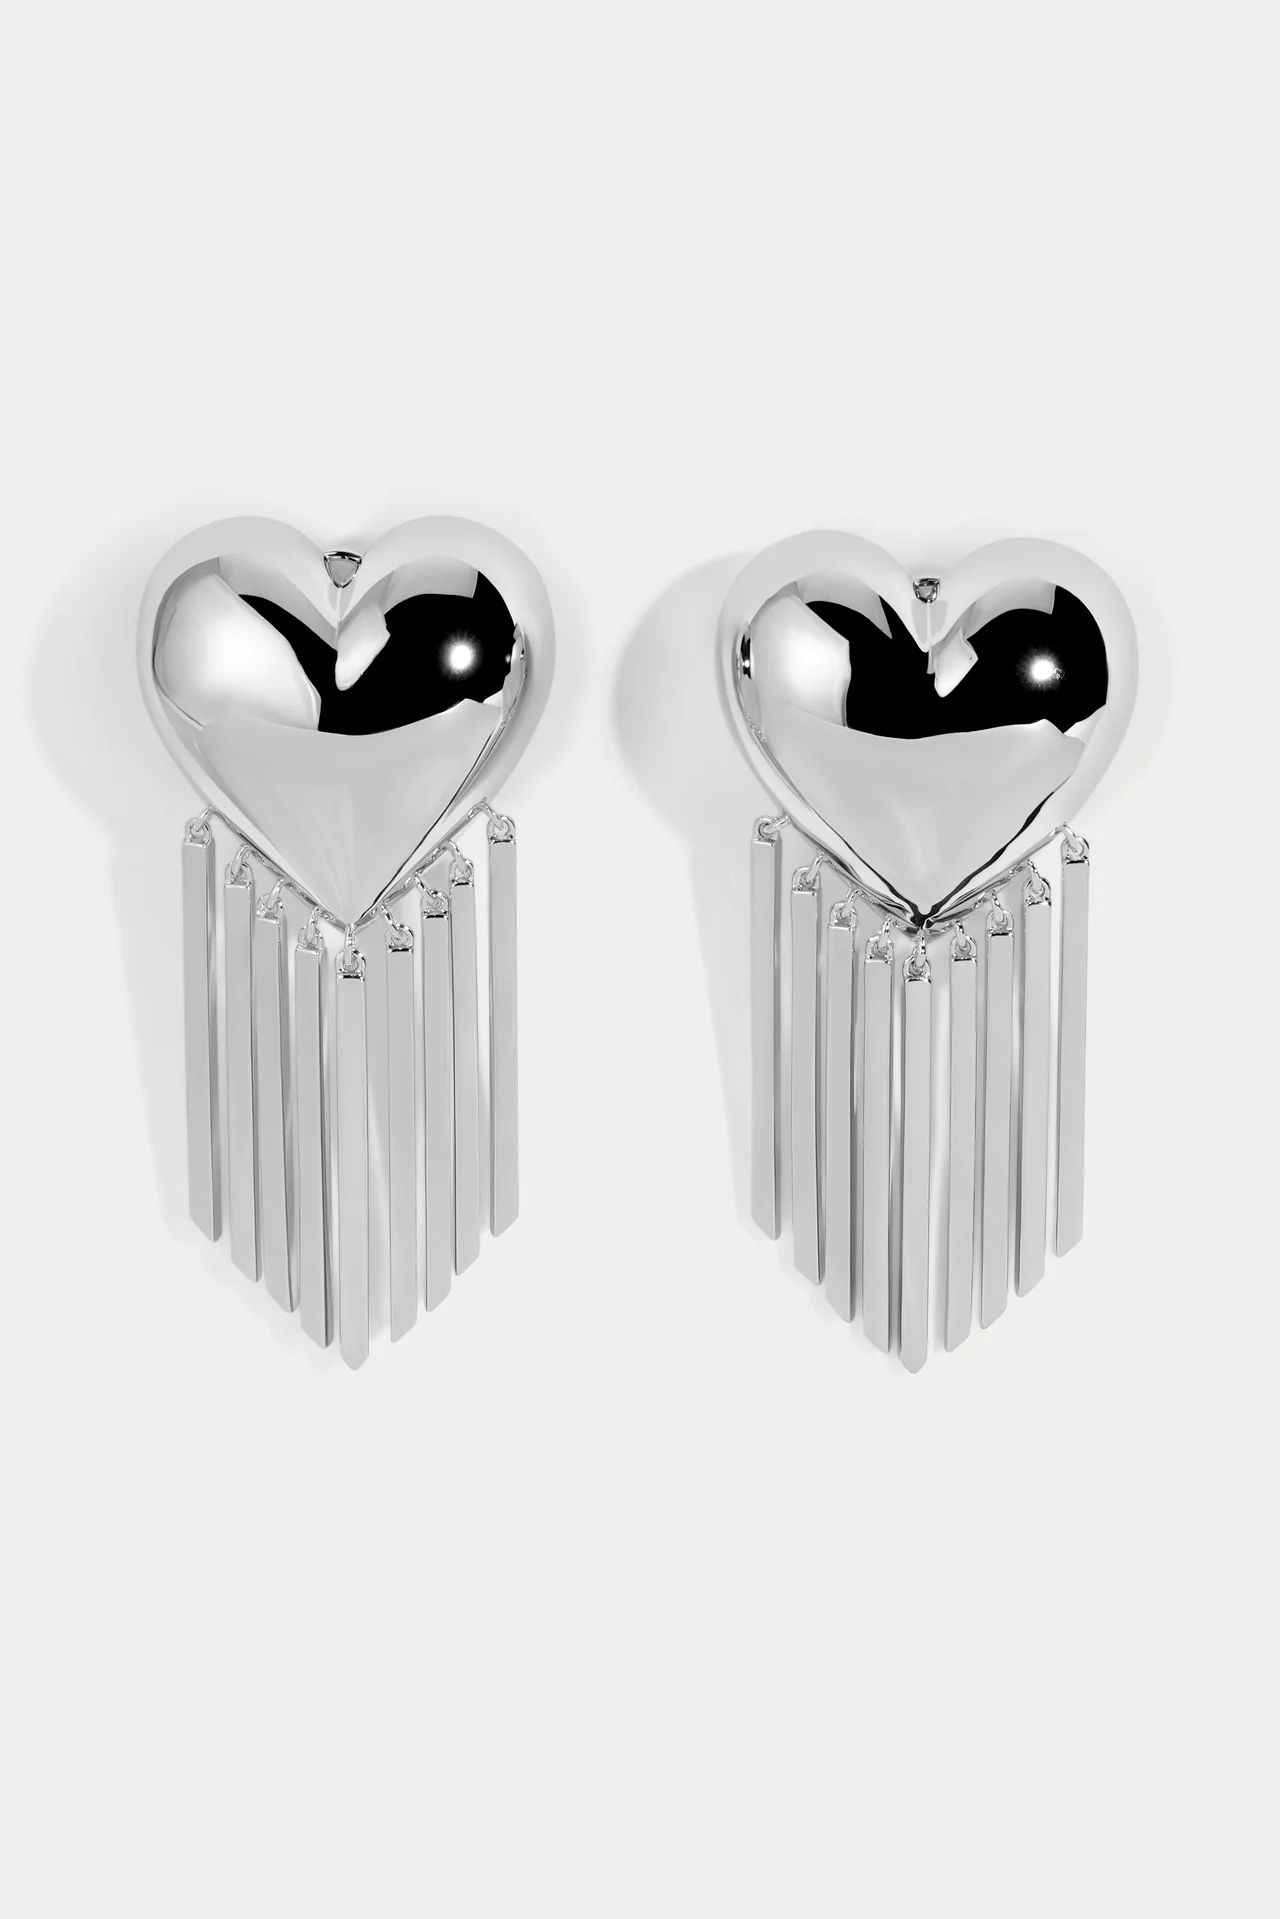 Bubble Heart Fringe Earrings | Lili Claspe